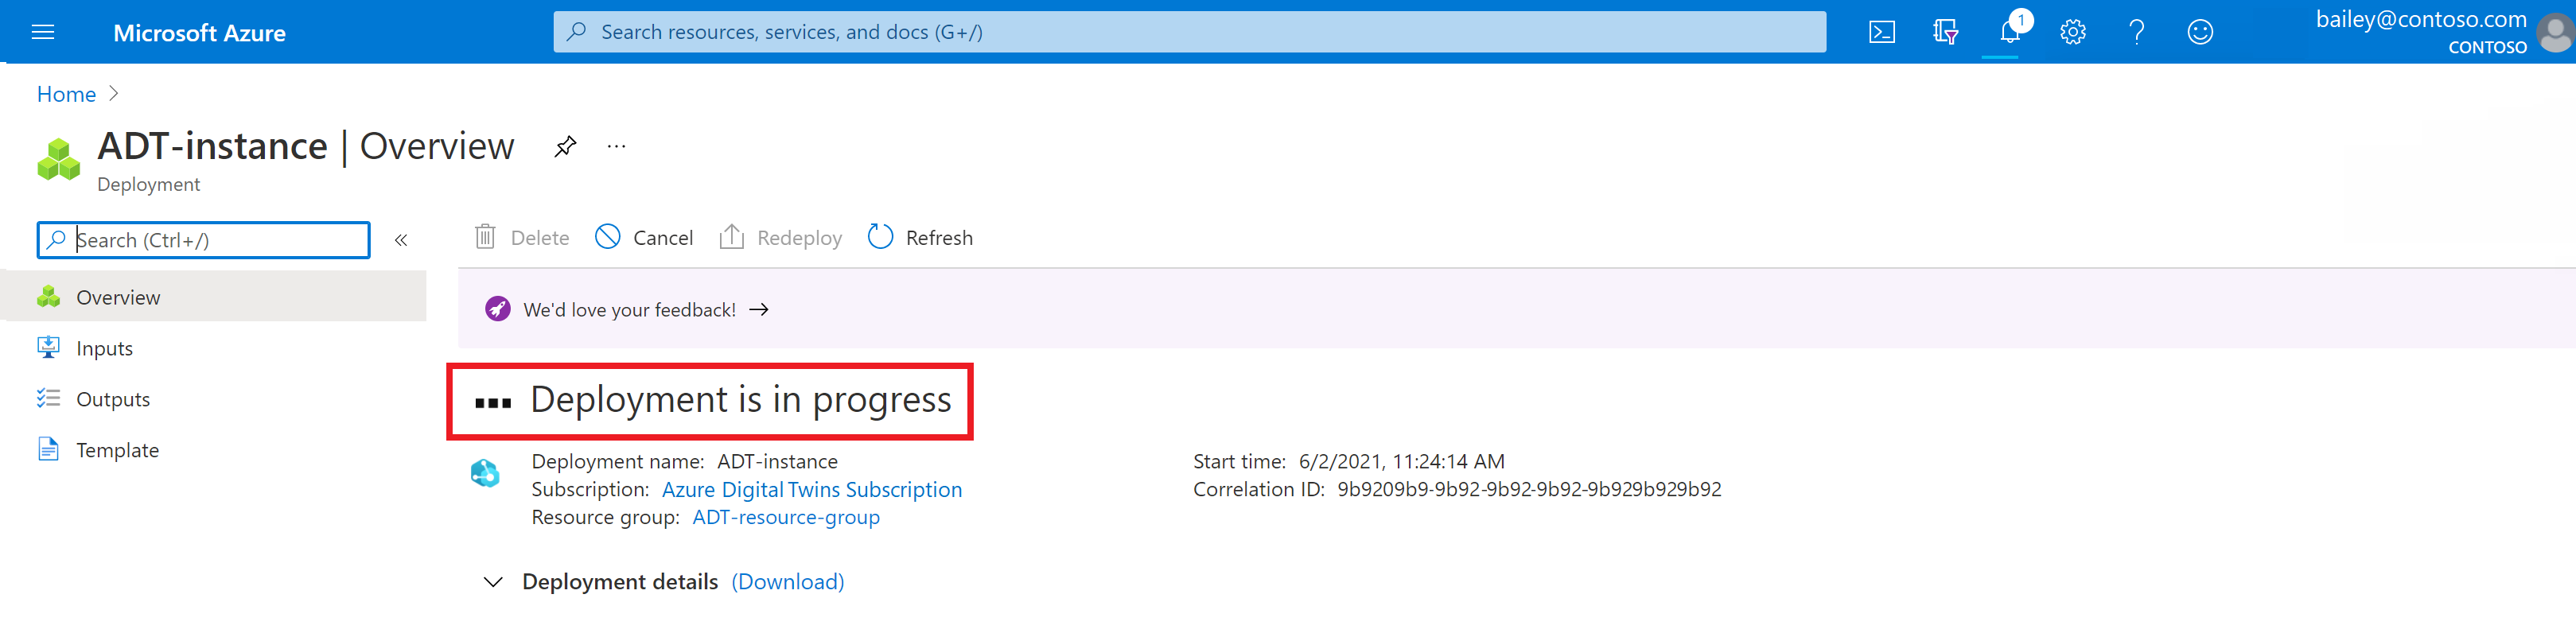 Capture d’écran de la page de déploiement pour Azure Digital Twins dans le portail Azure. La page indique que le déploiement est en cours.